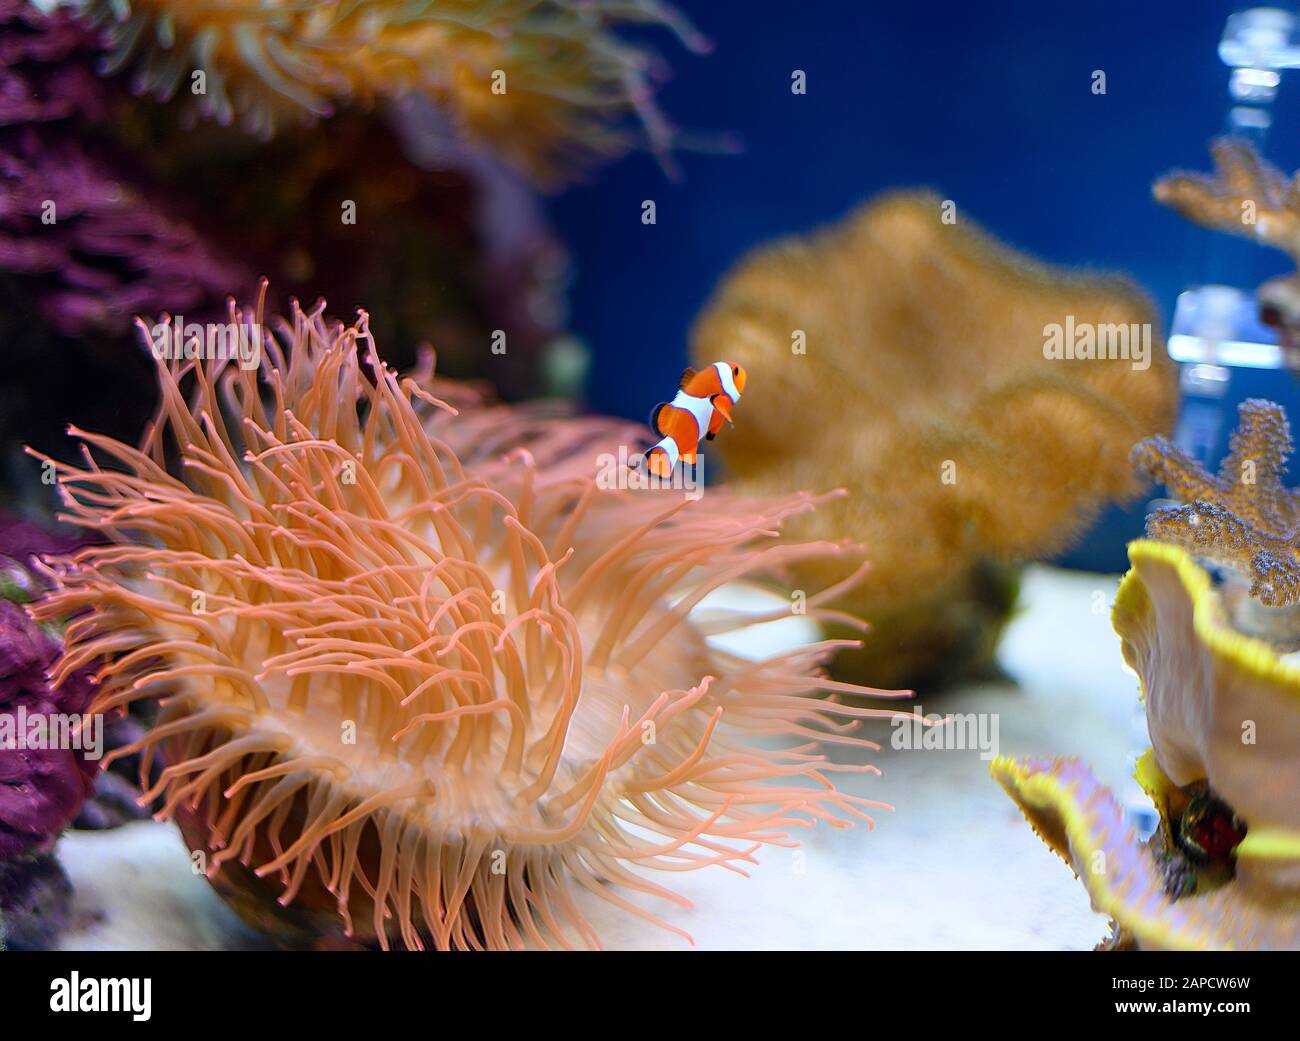 Clown Fisch im Aquarium Stockfoto